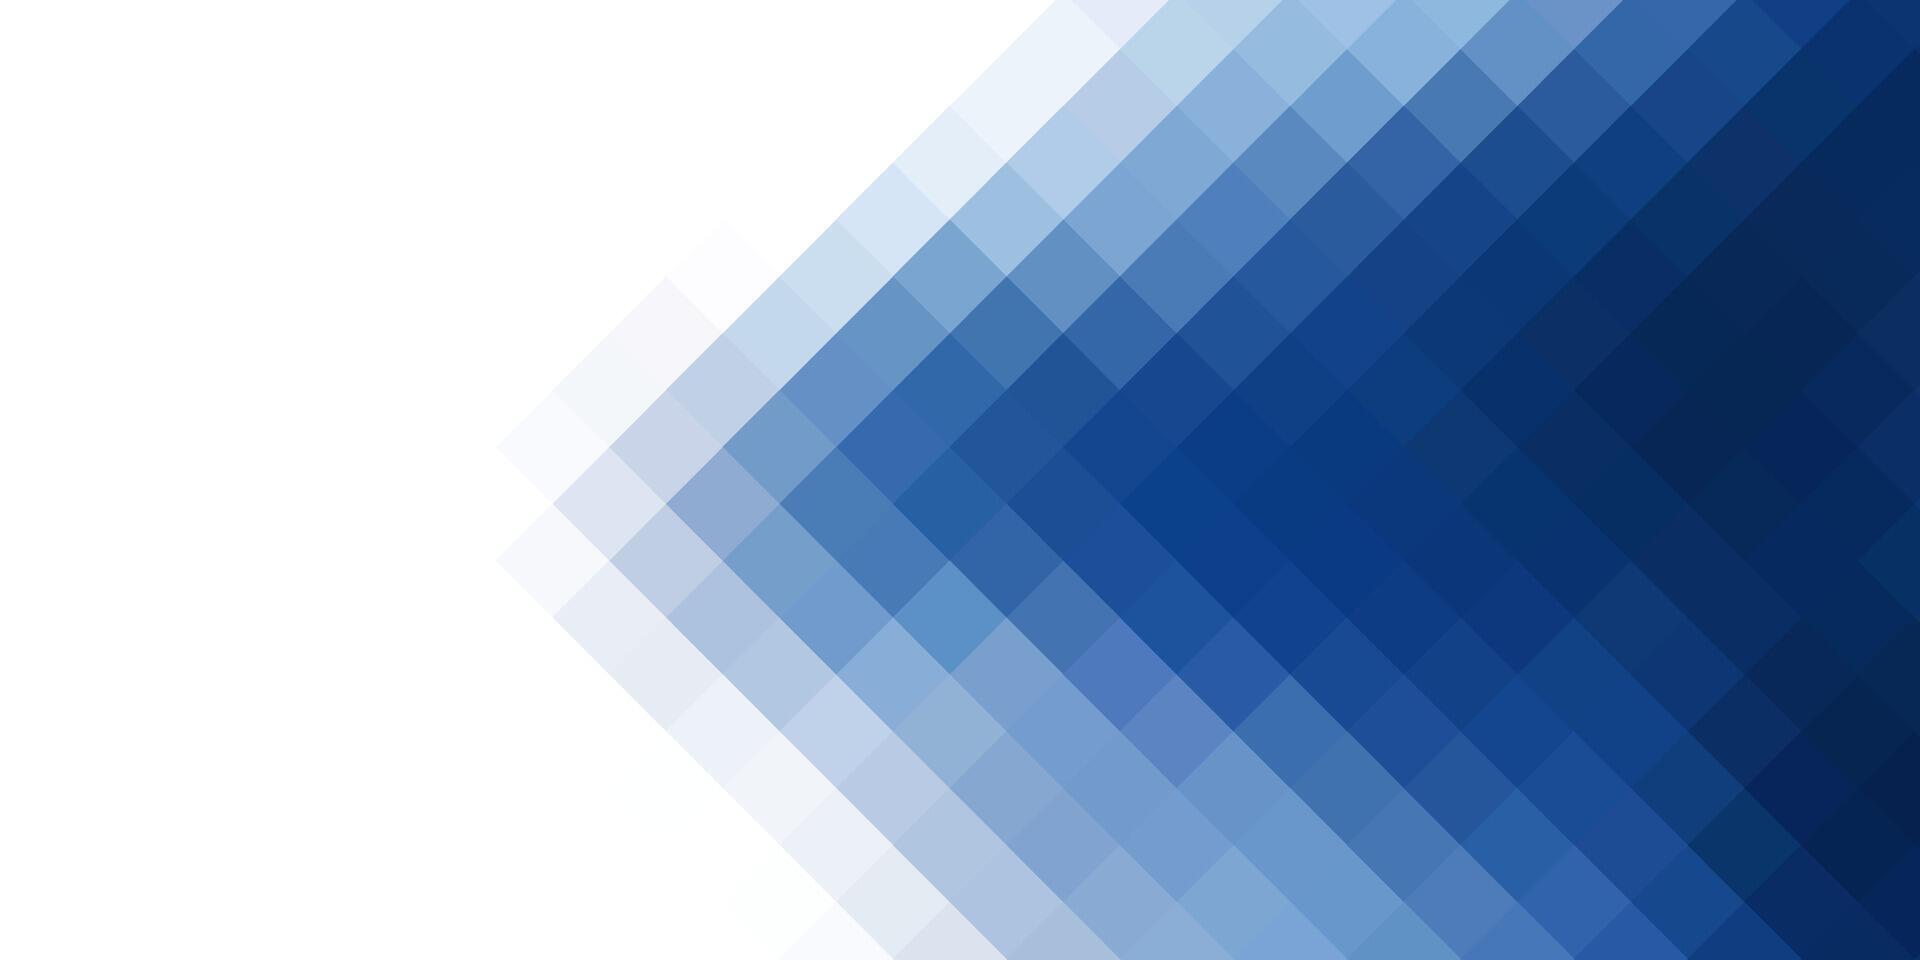 abstract blauw en wit pixelatie achtergrond vector